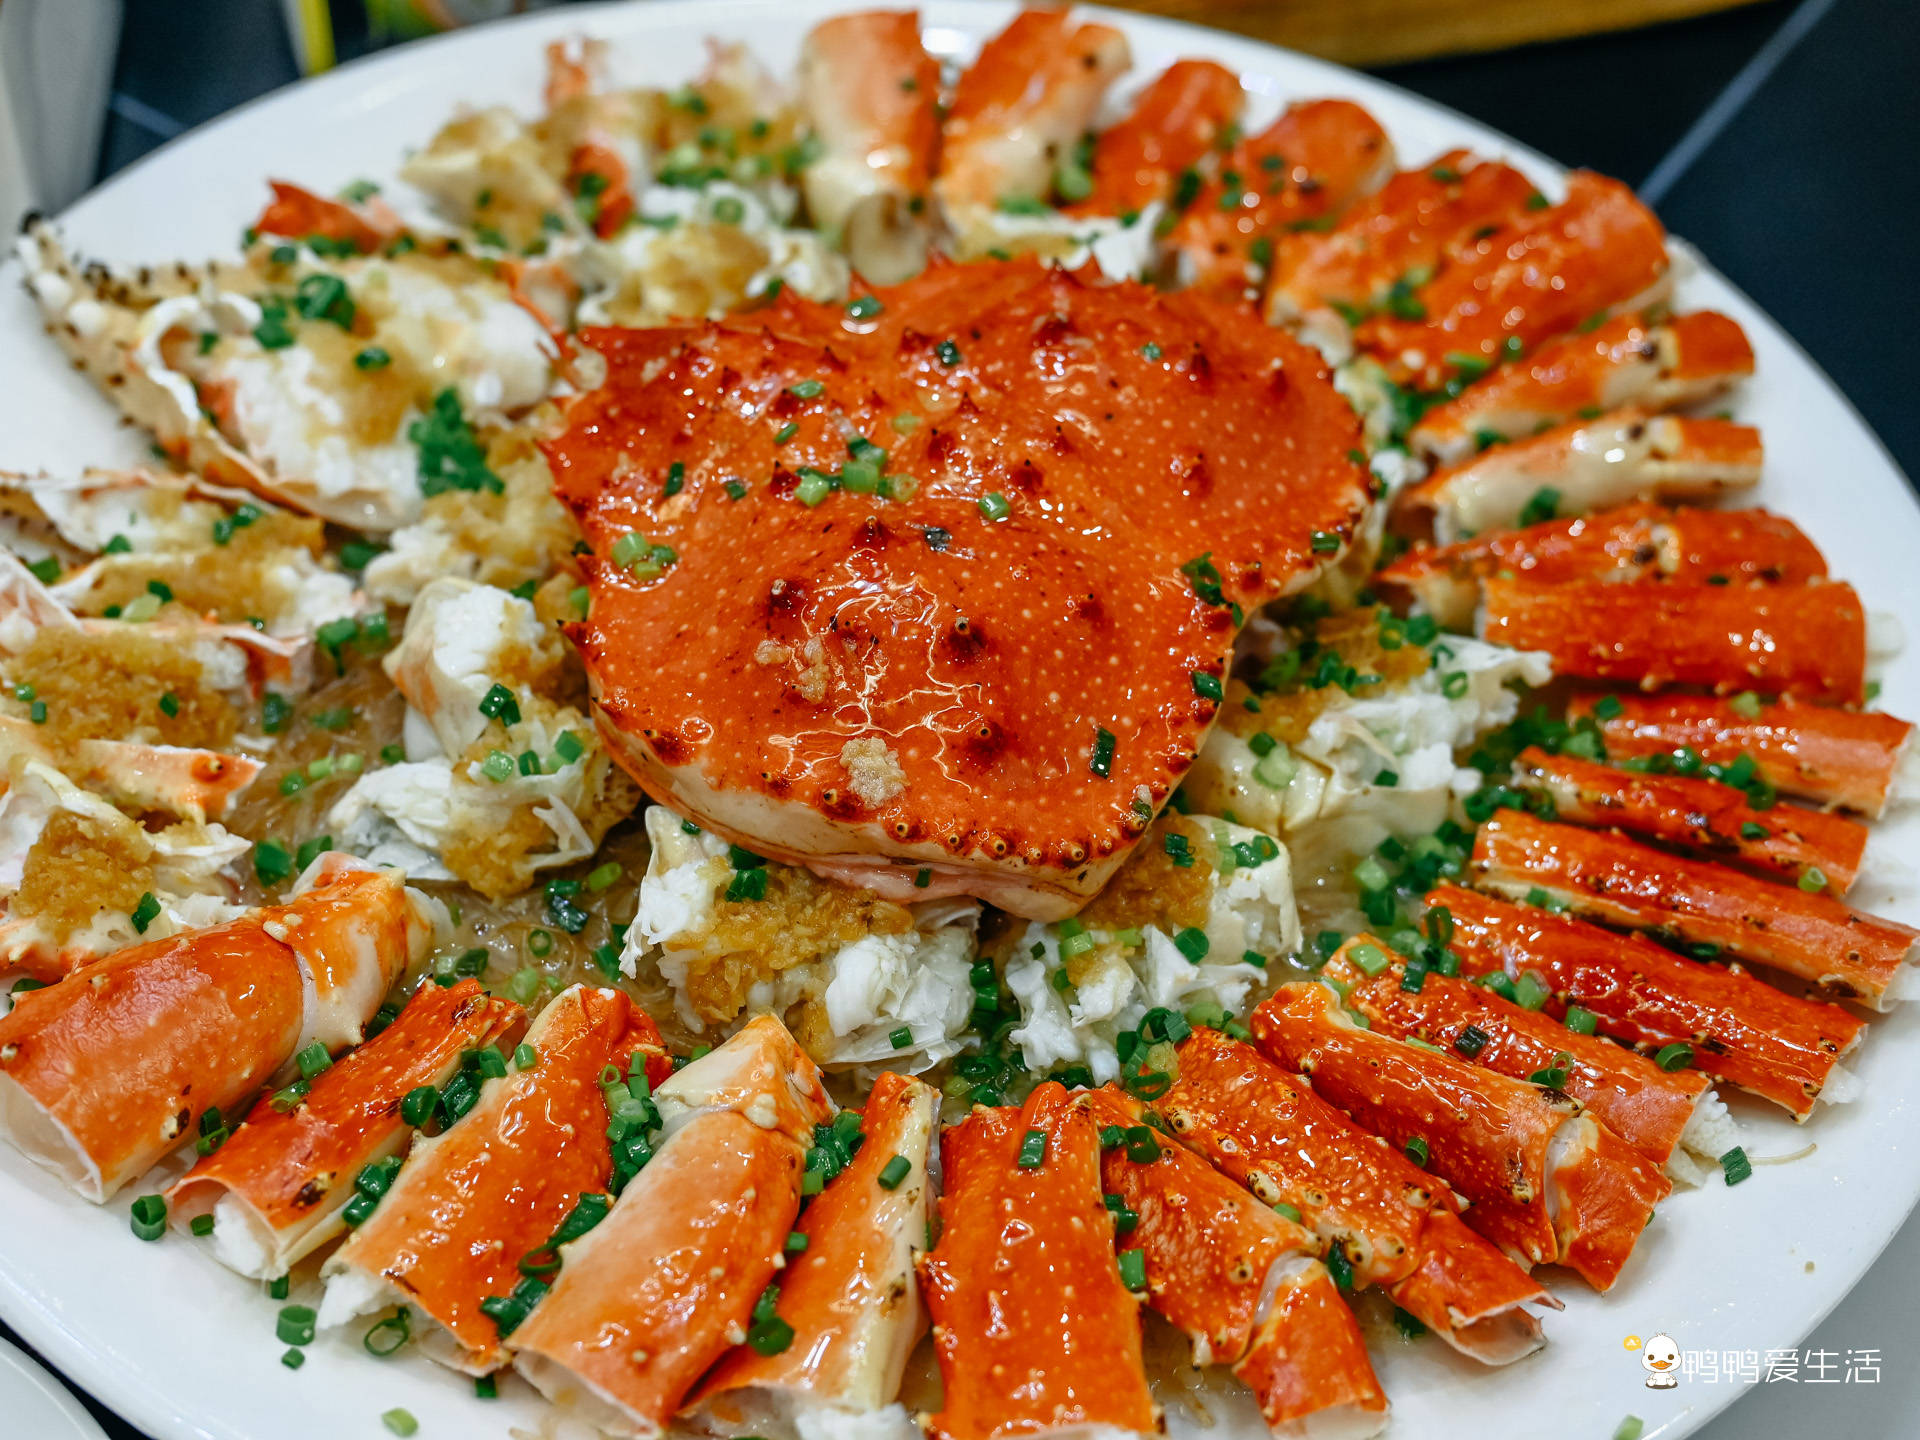 清蒸帝王蟹,高端的食材往往只要最简单的烹饪方式